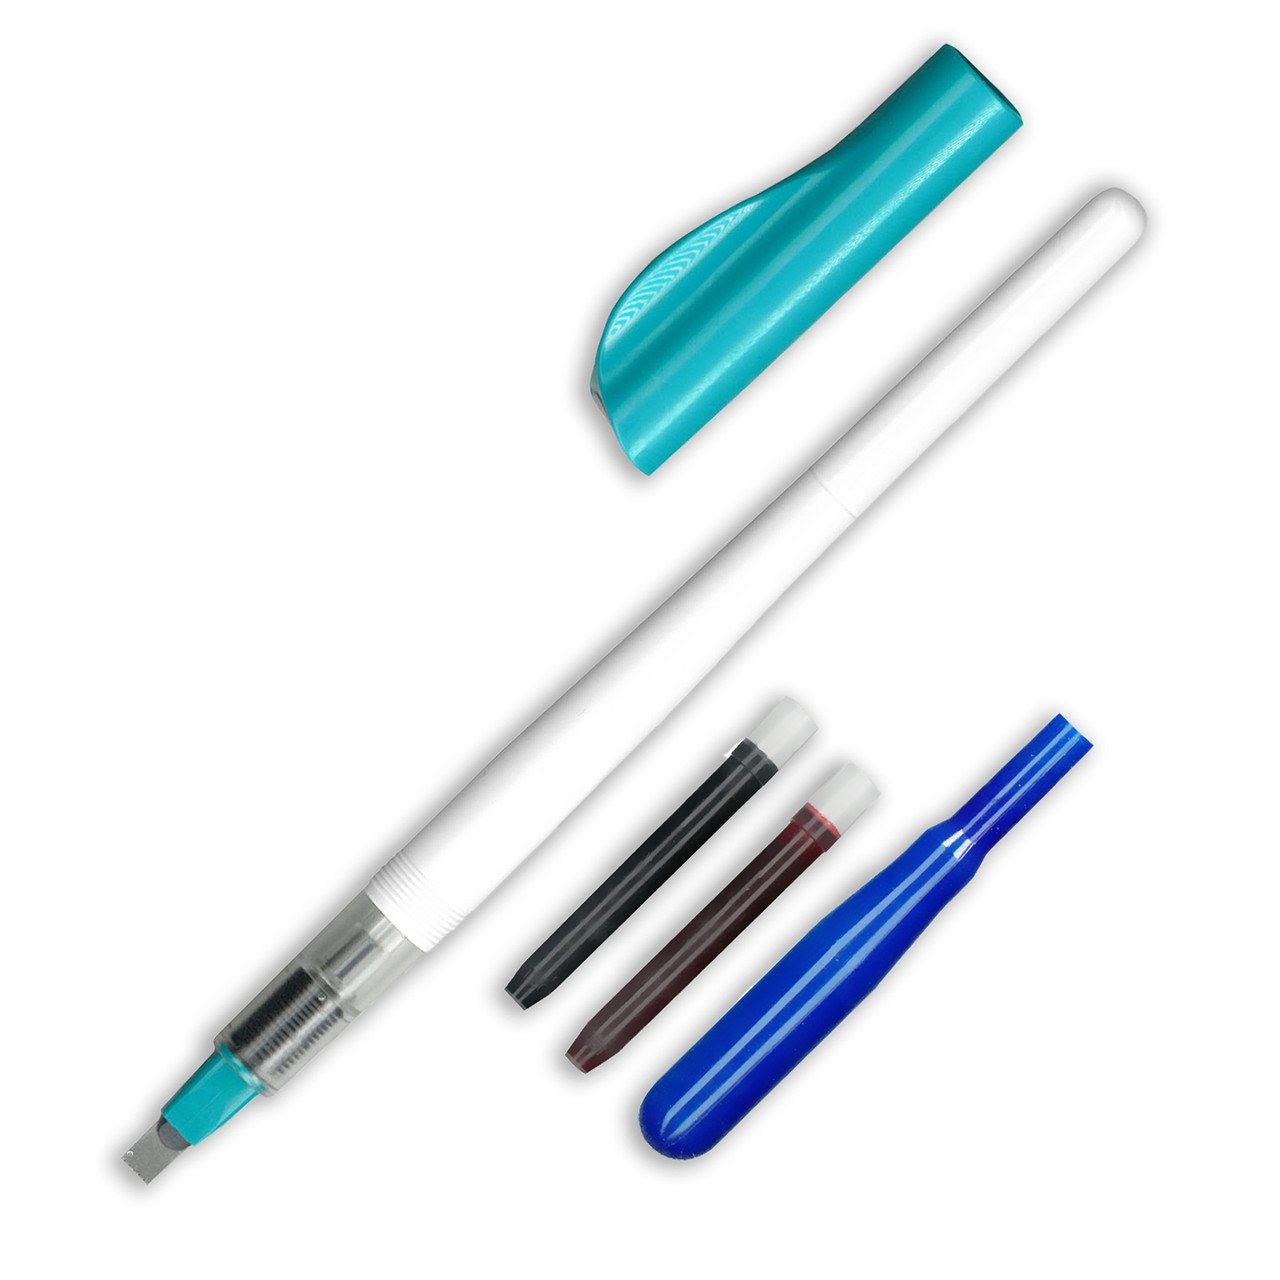 What makes each S Pen unique?